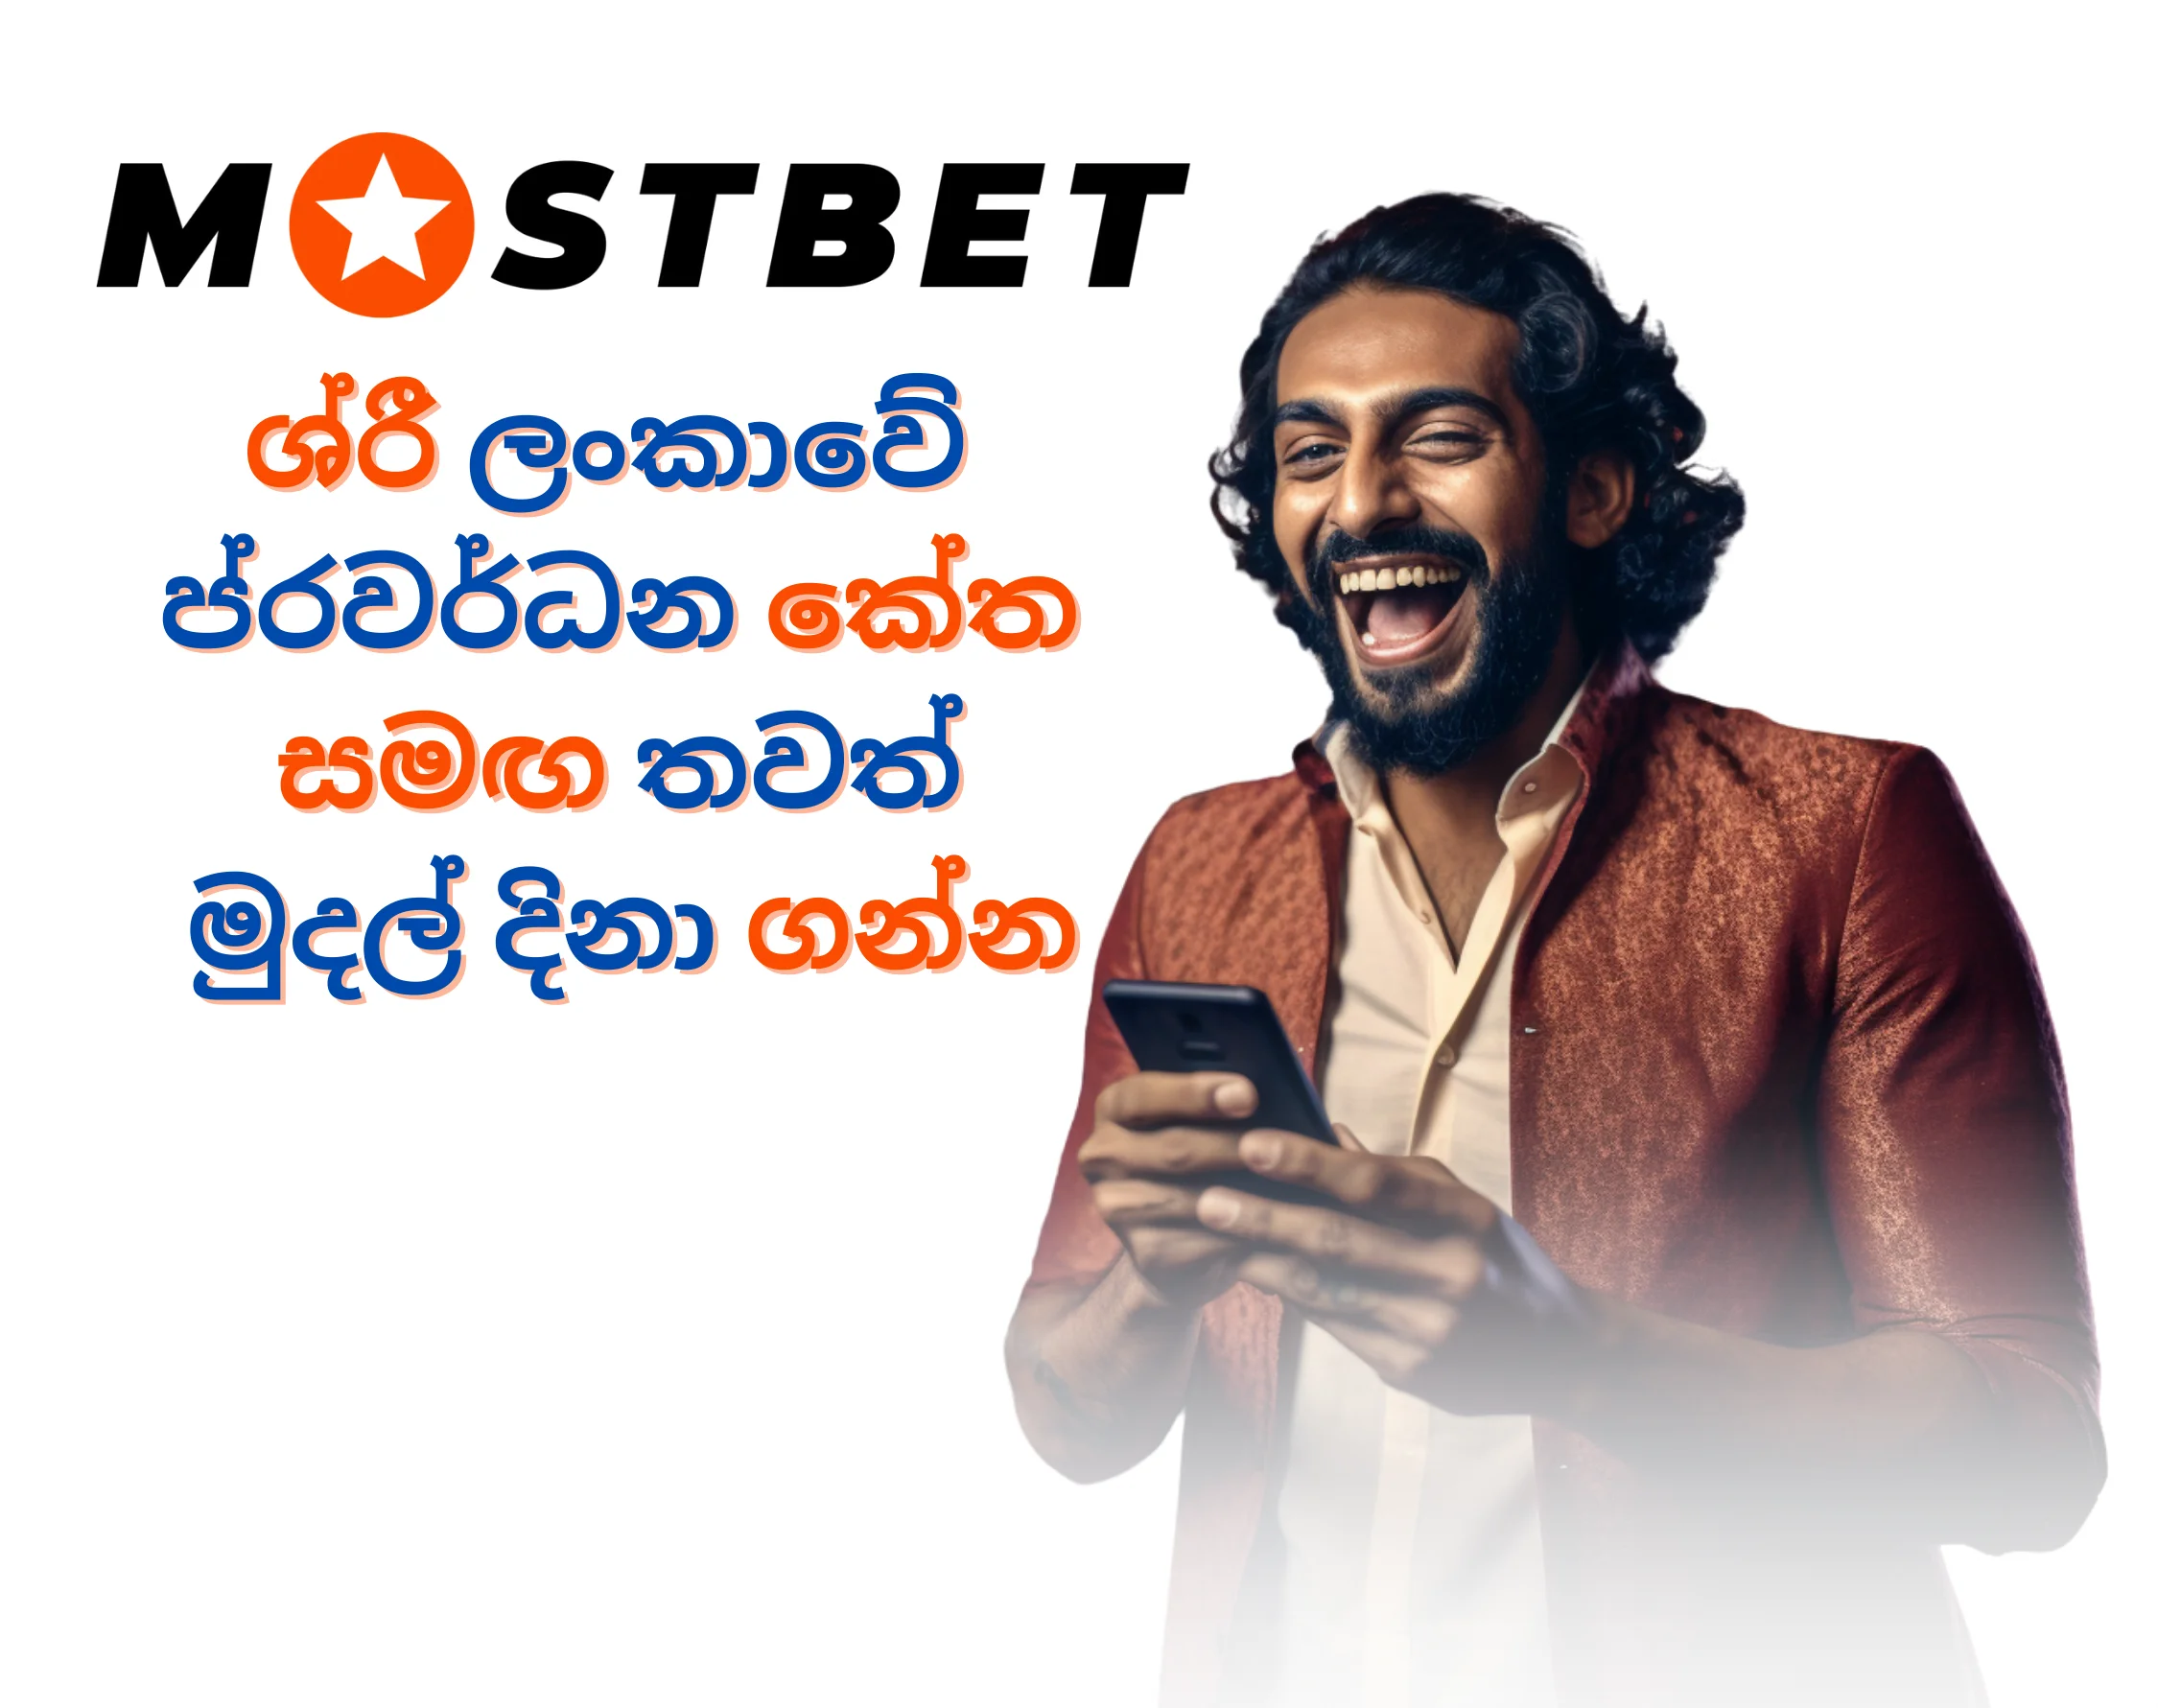 Sri Lankan man using Mostbet promo code